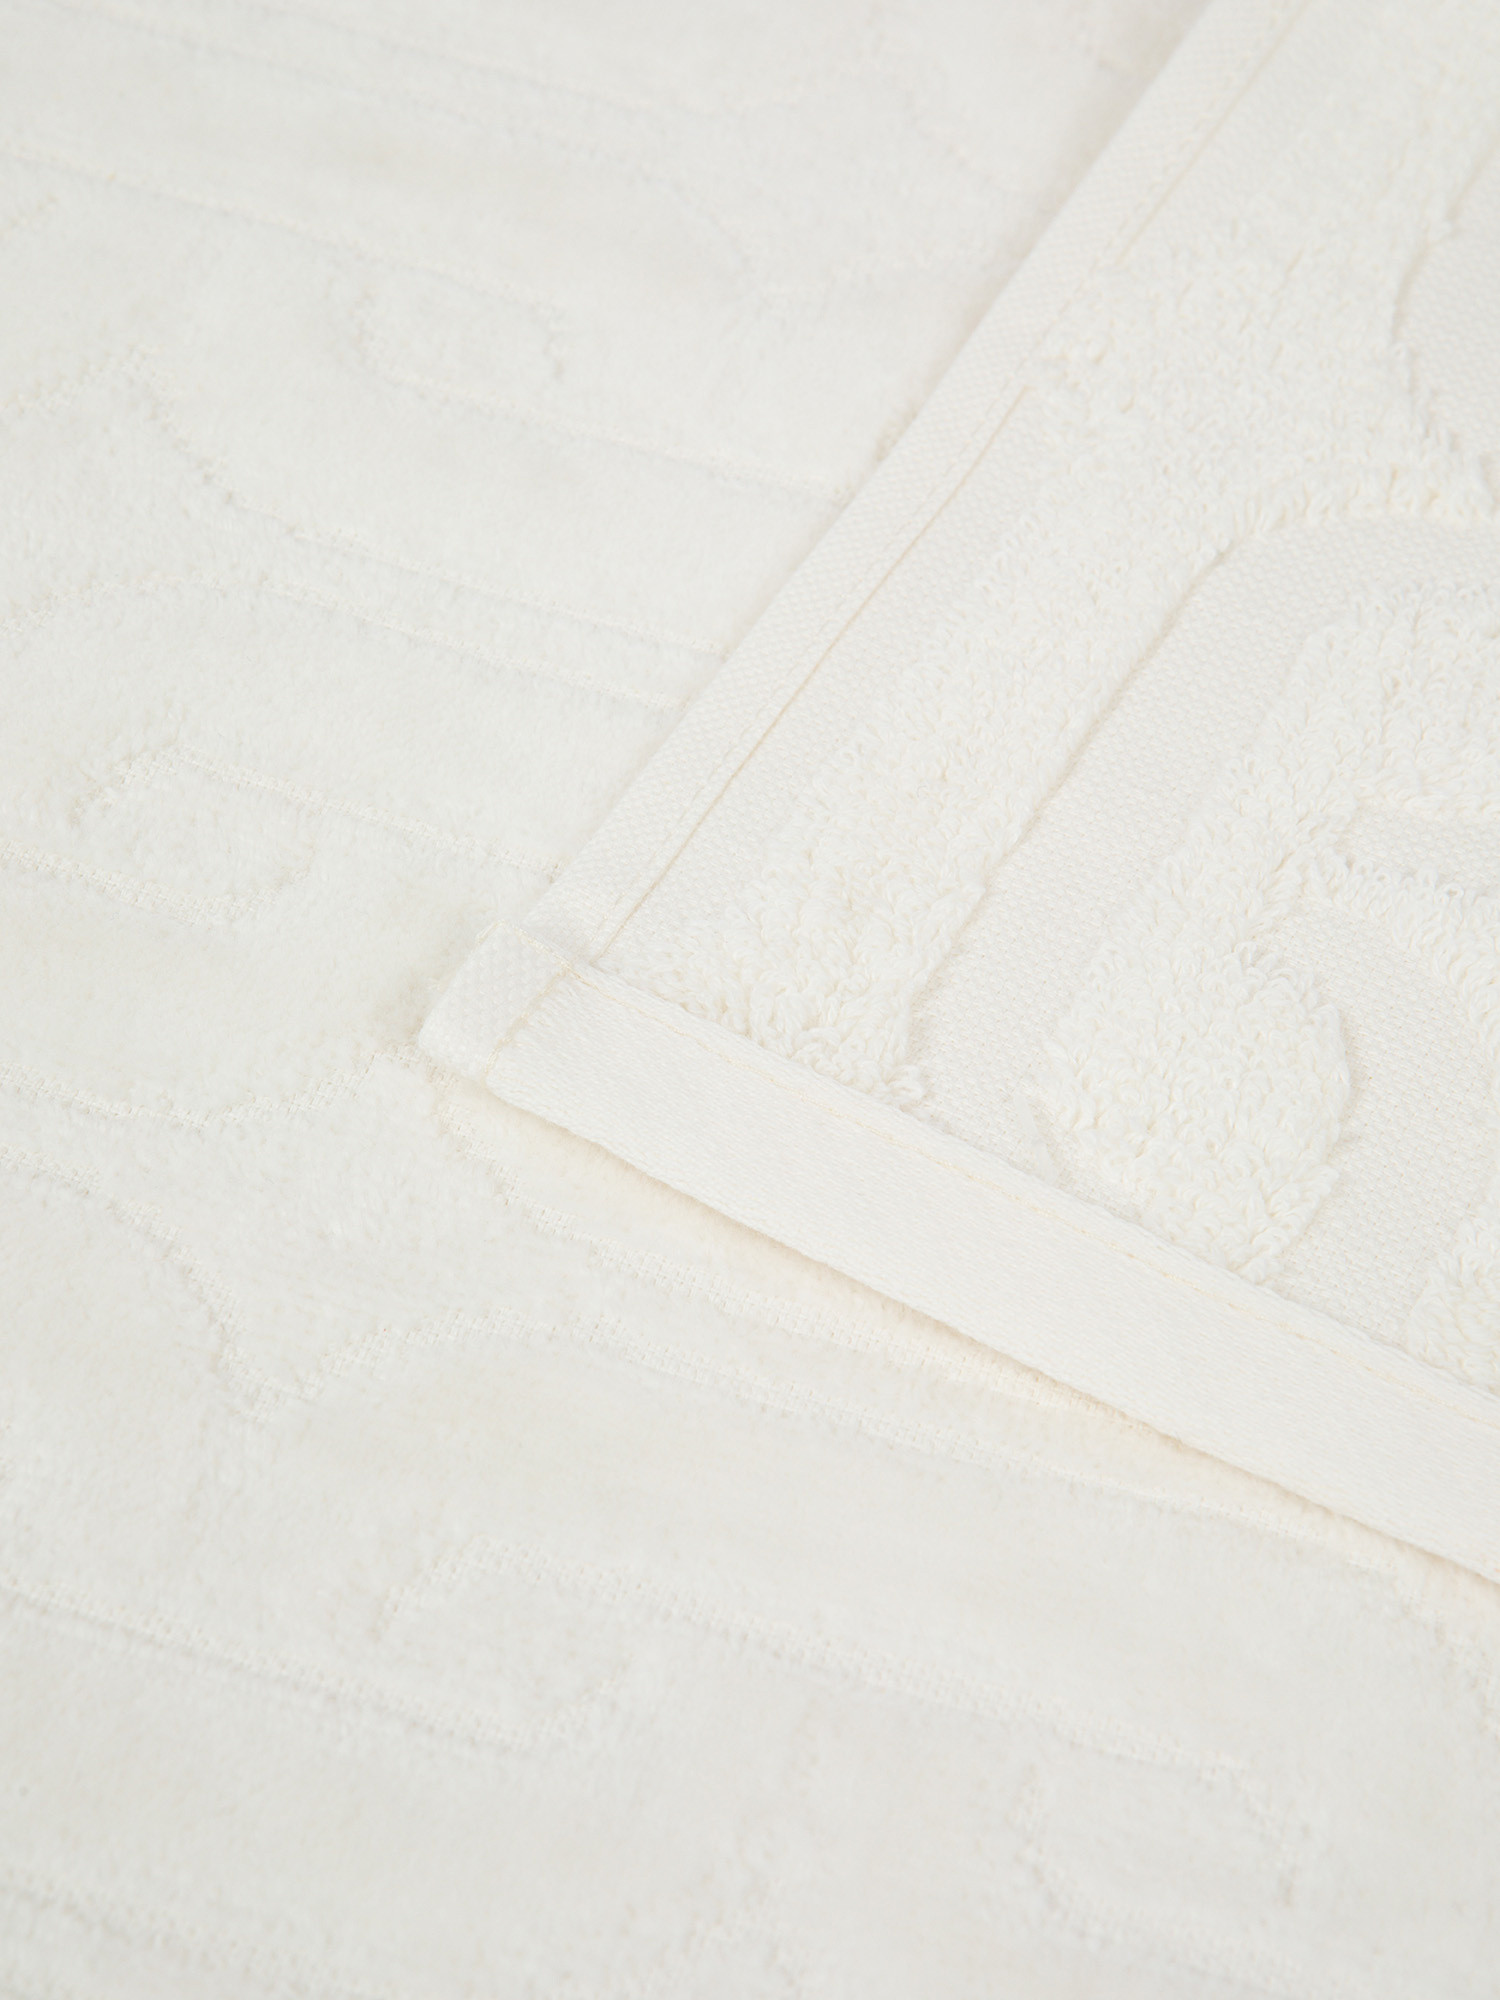 Asciugamano in velour di cotone con lavorazione geometrica a rilievo, Bianco, large image number 2